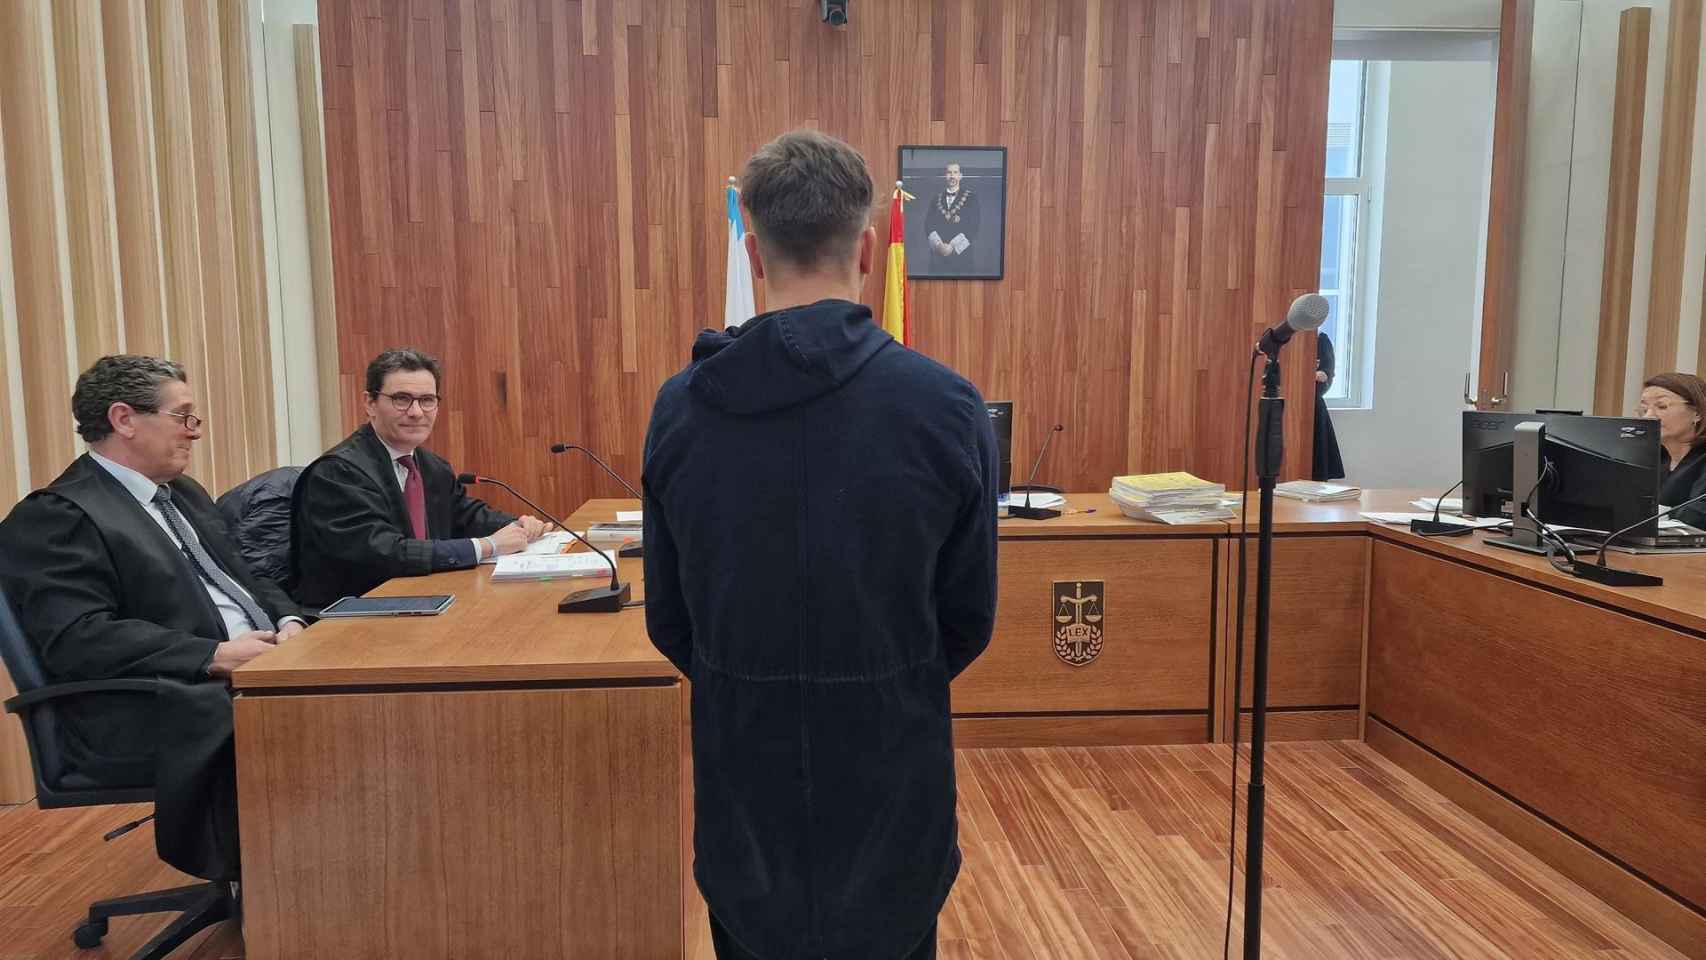 El acusado durante el juicio.